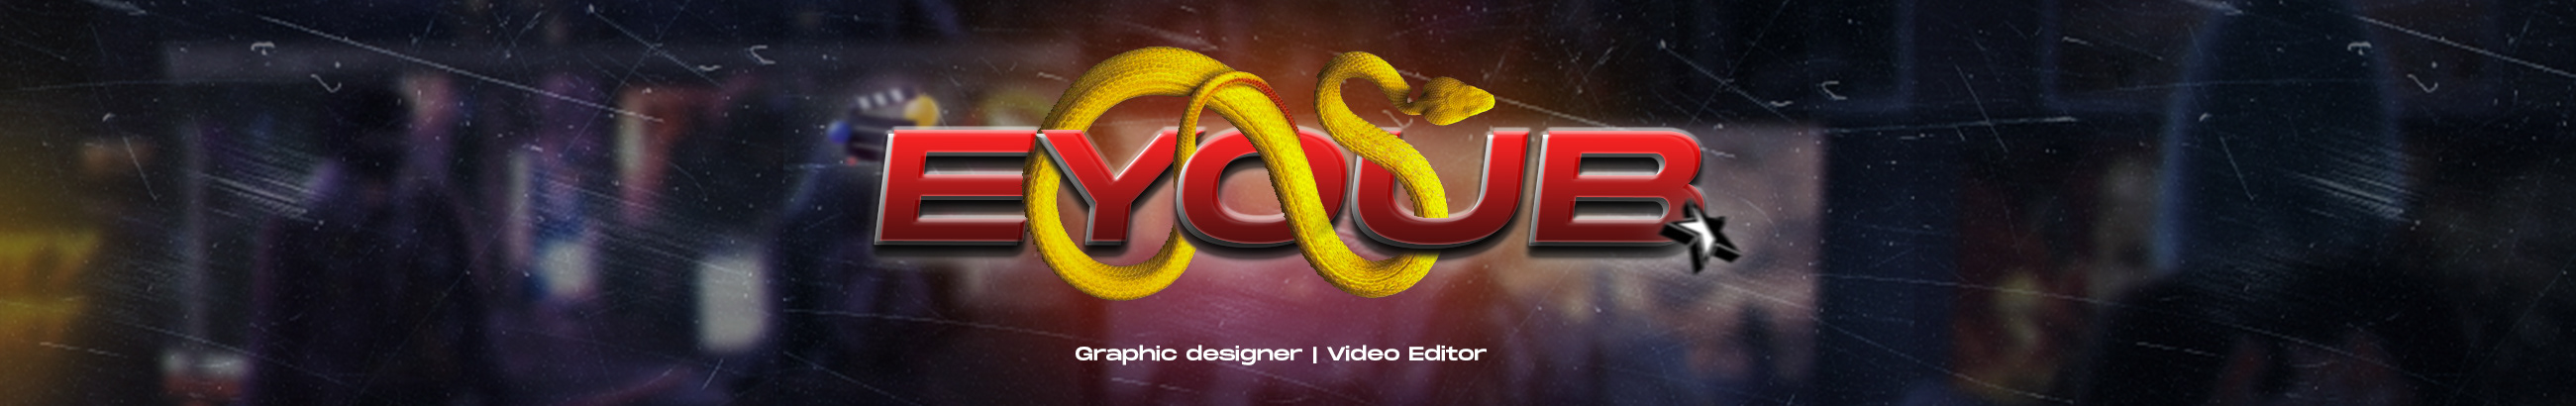 Banner de perfil de Eyoub Design